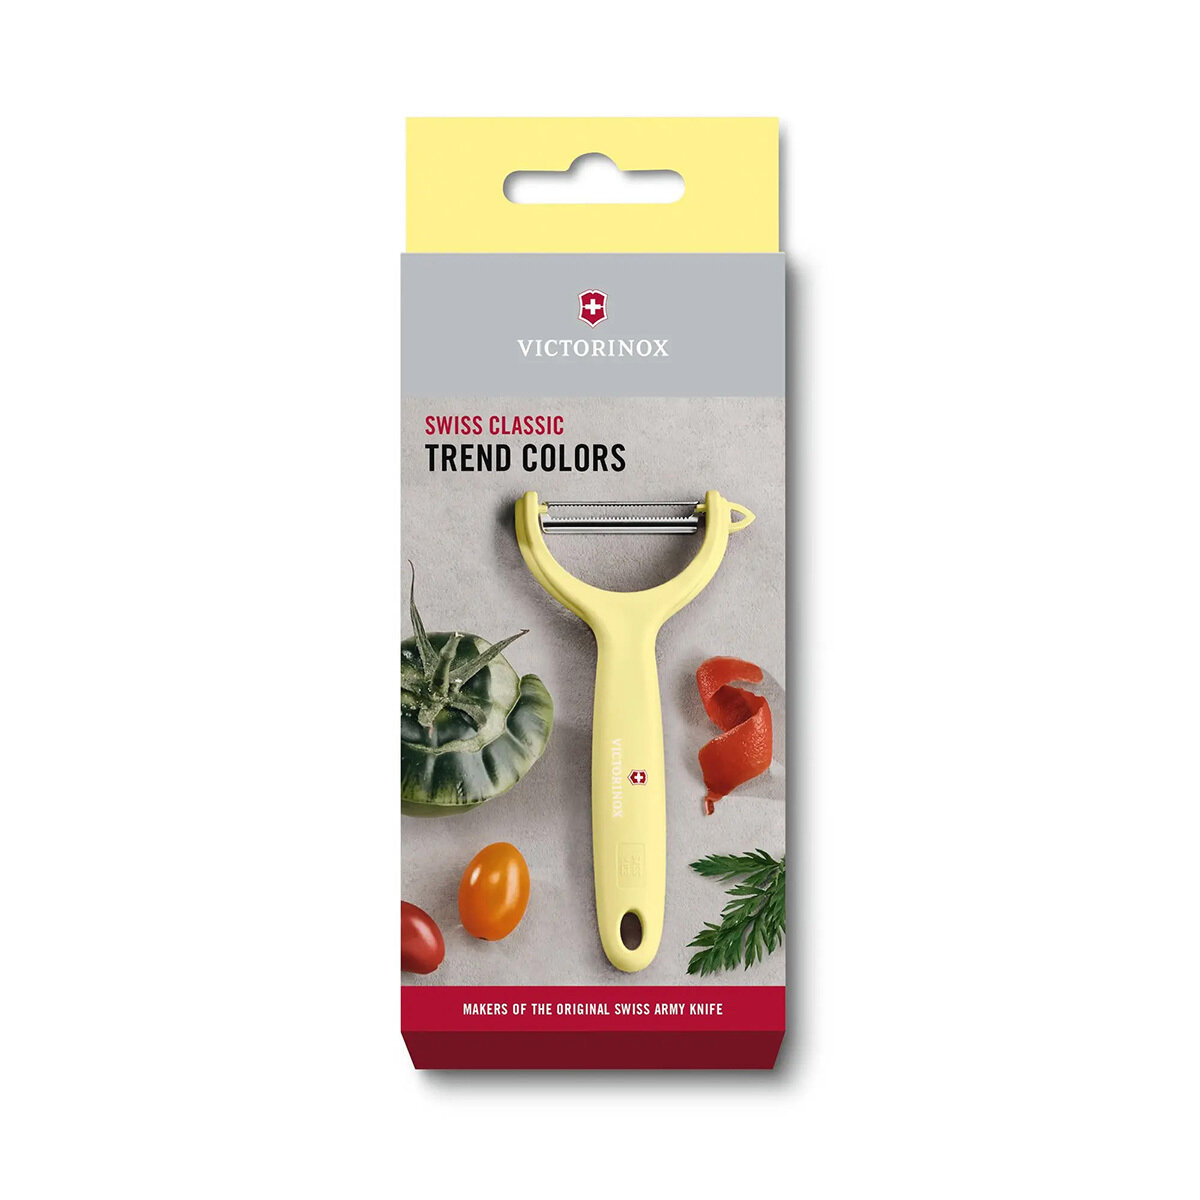 Кухонные ножи Victorinox Нож для чистки томатов и киви VICTORINOX, двусторонее зубчатое лезвие, светло-жёлтая рукоять Victorinox MR-7.6079.82